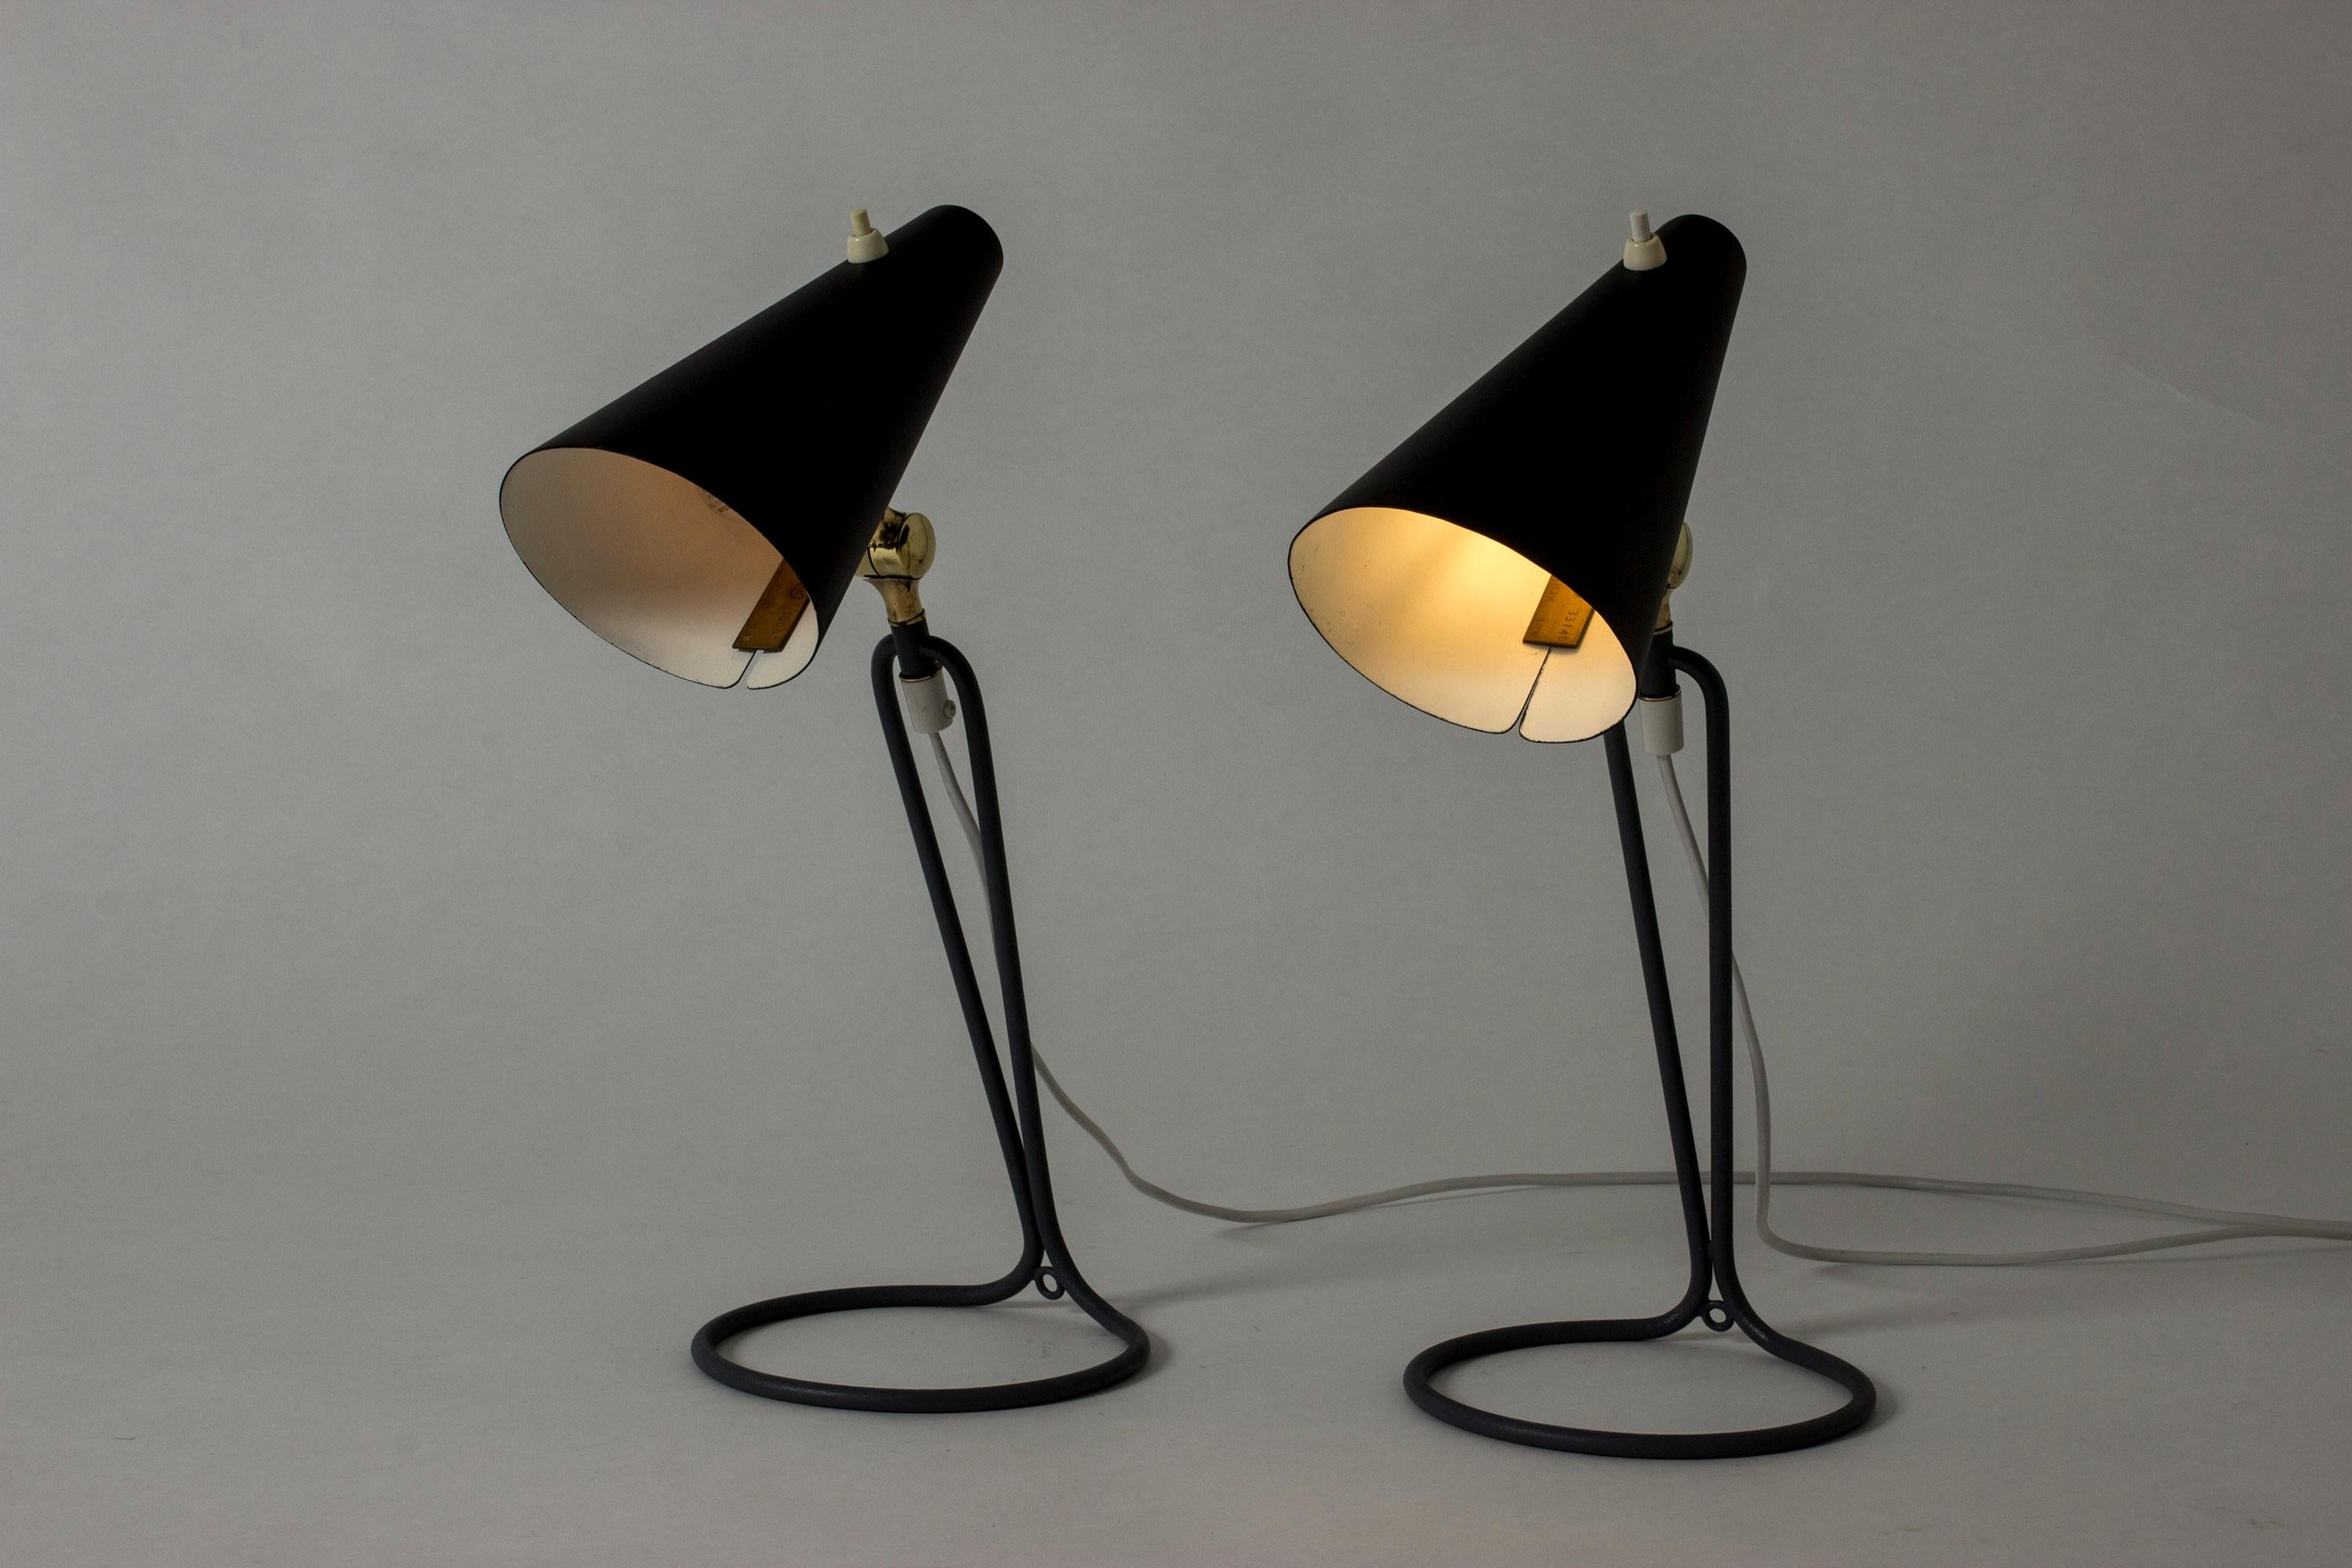 Paire d'étonnantes lampes de table de Bertil Brisborg, avec des abat-jour laqués noirs. Une base grise fraîche dans un design graphique élancé. Joints en laiton contrastés.